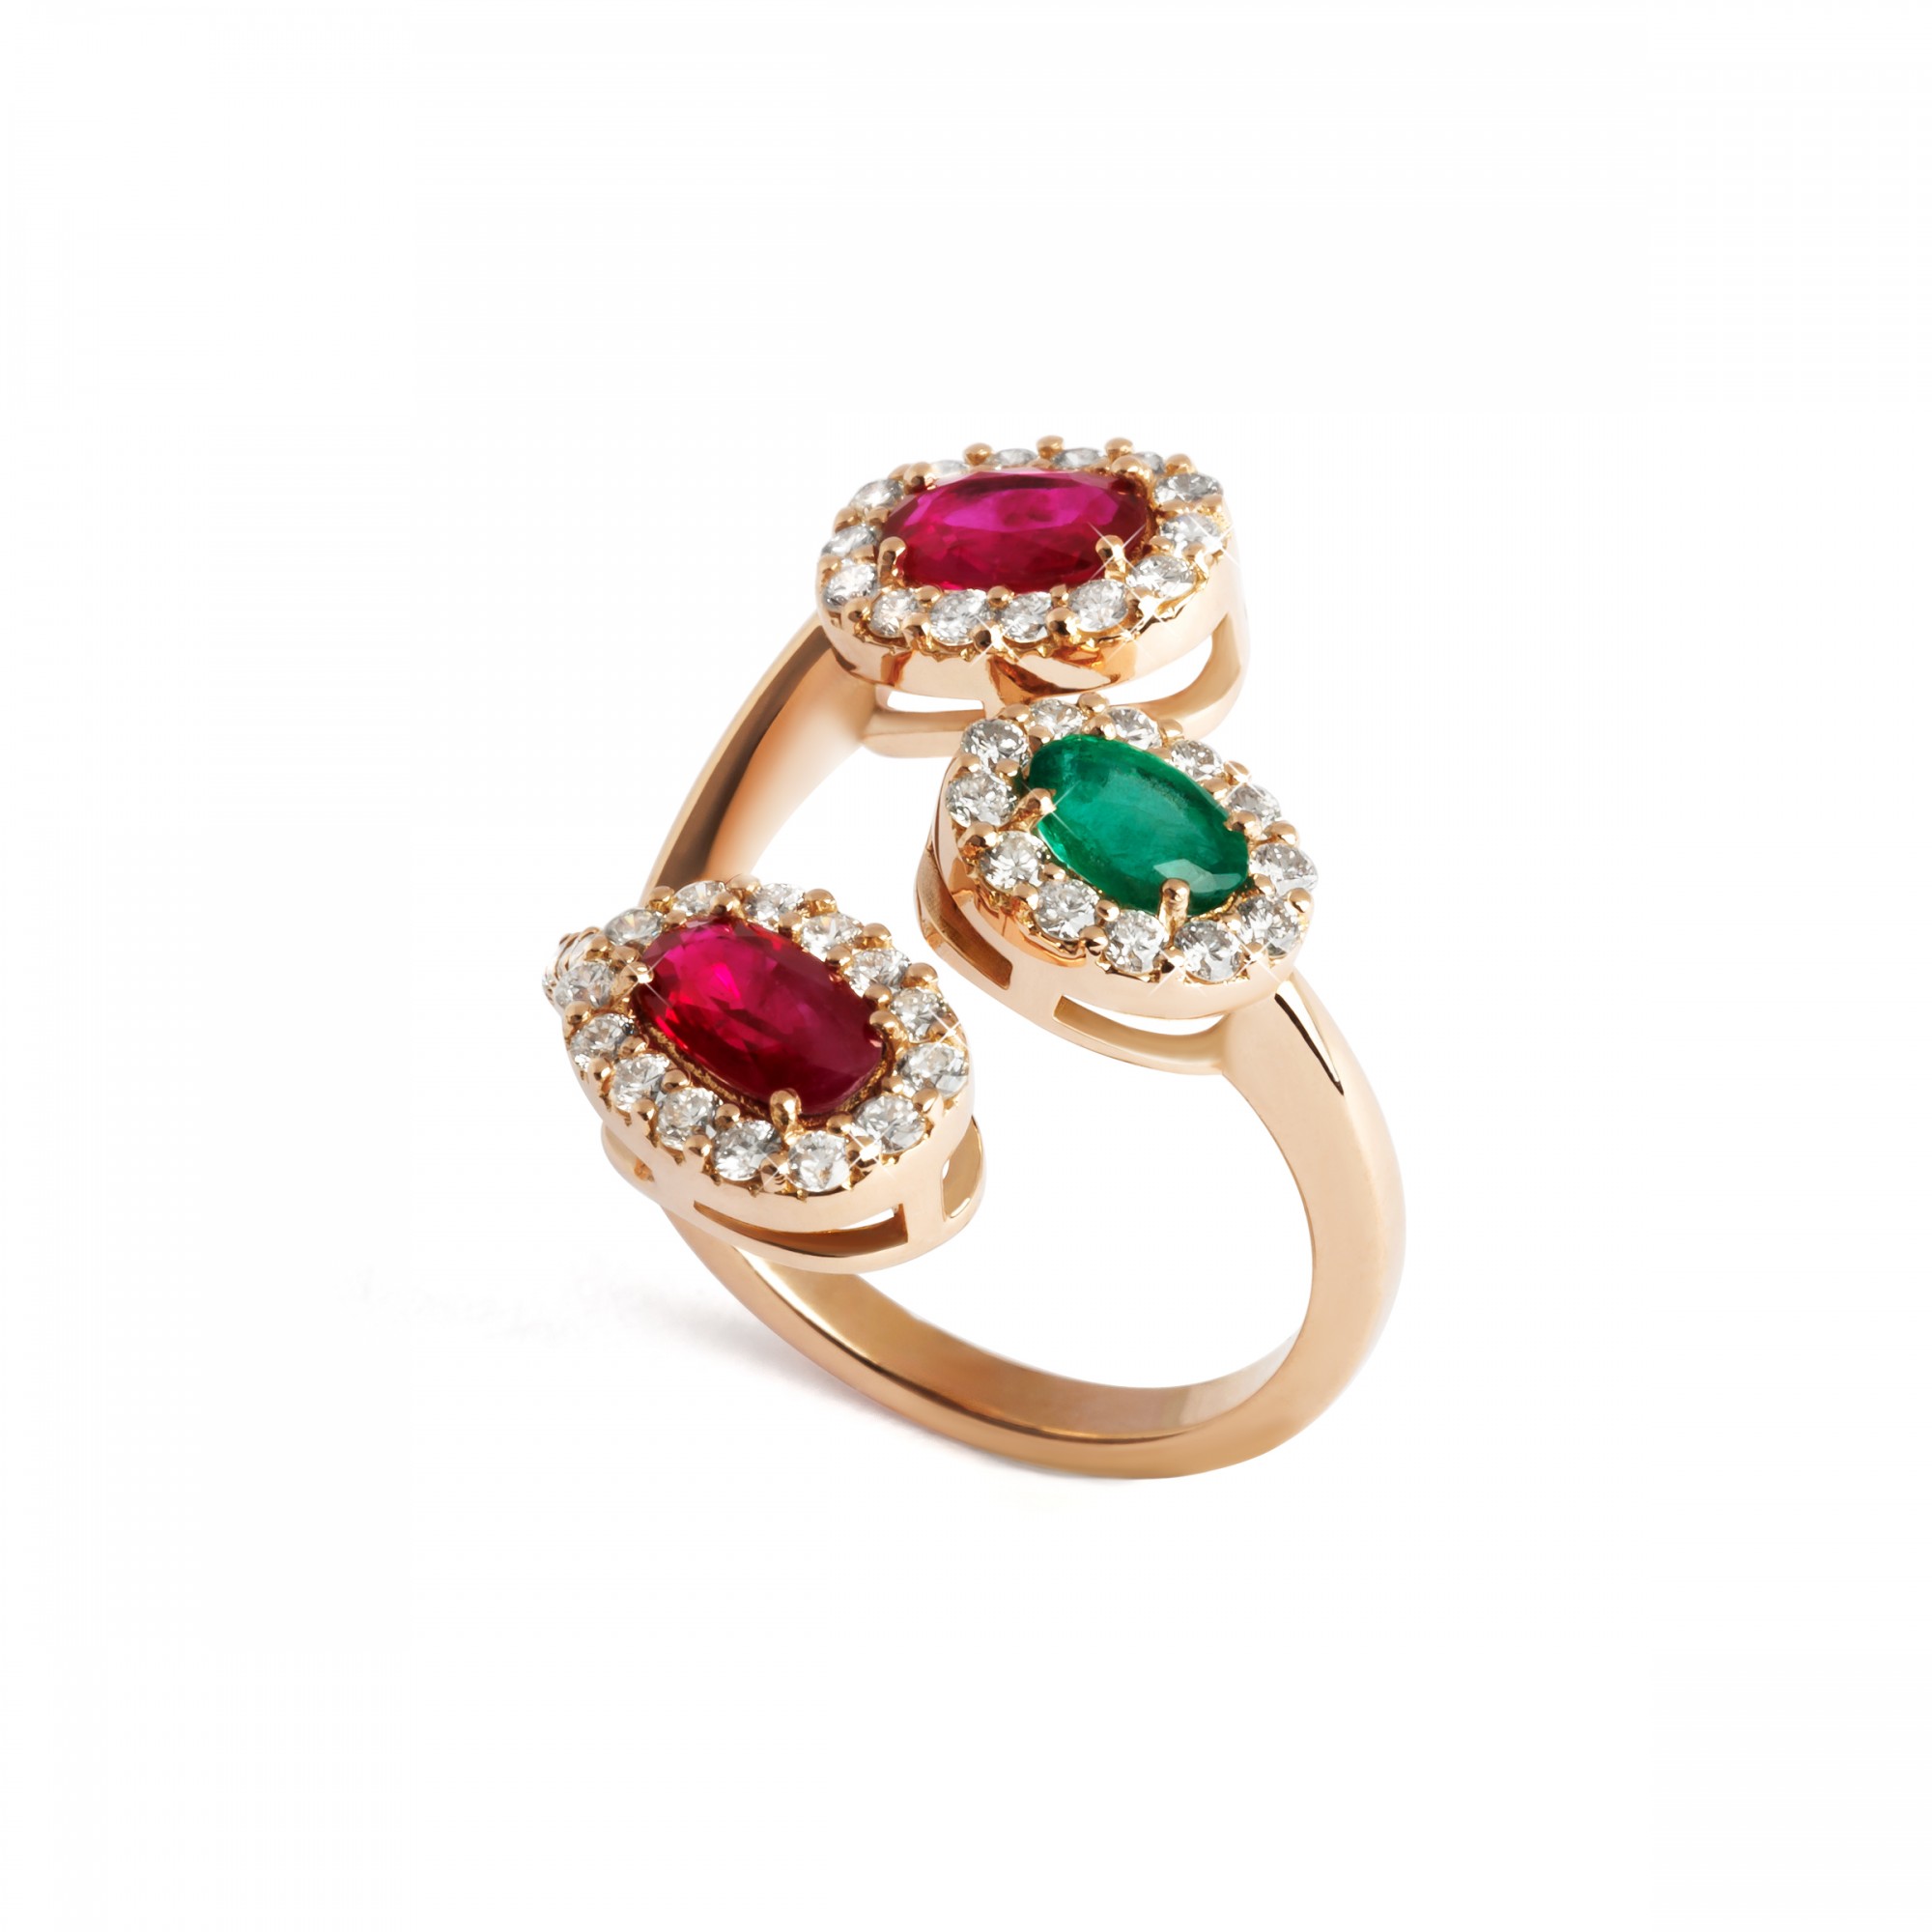 Anello con rubini e smeraldo  - Valadier shop online